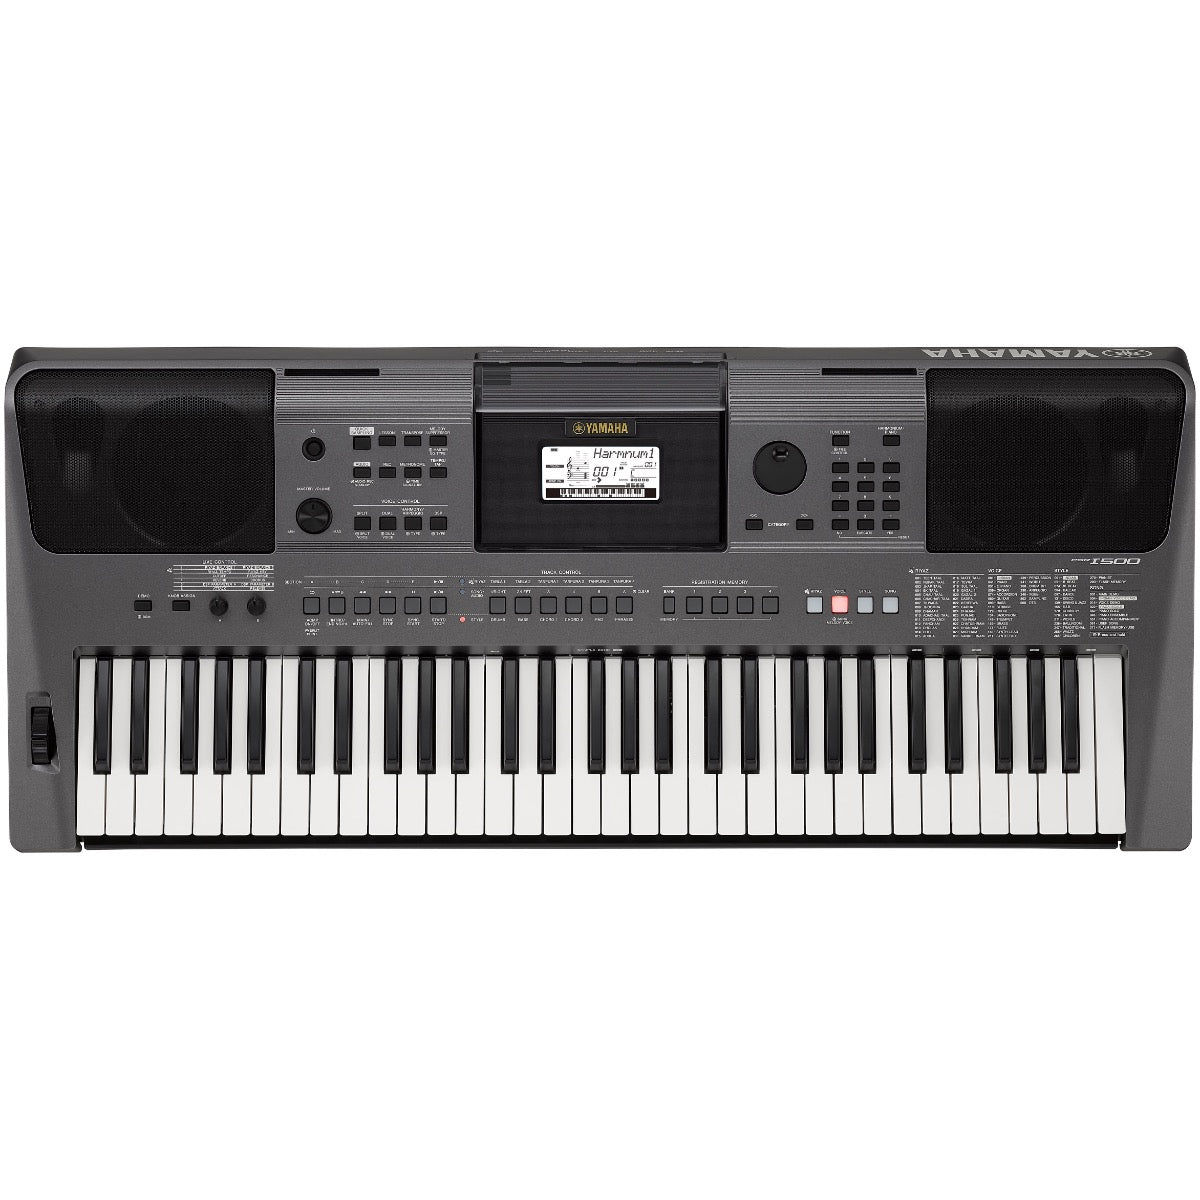 Top view of Yamaha PSR-I500 Portable Keyboard